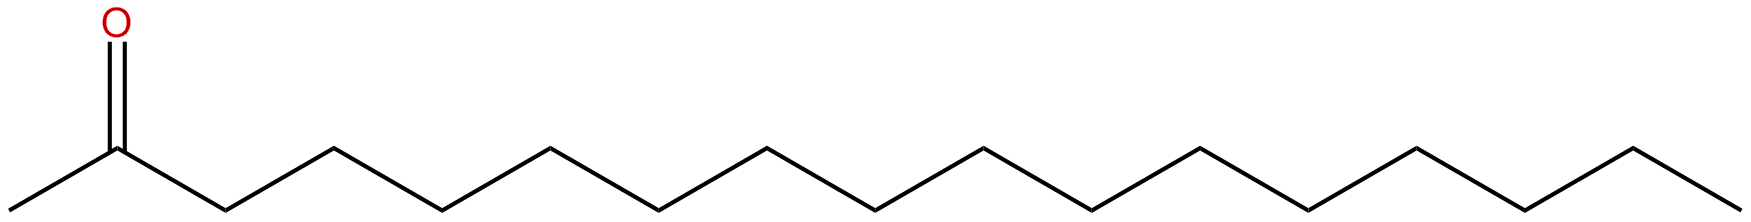 Image of 2-heptadecanone